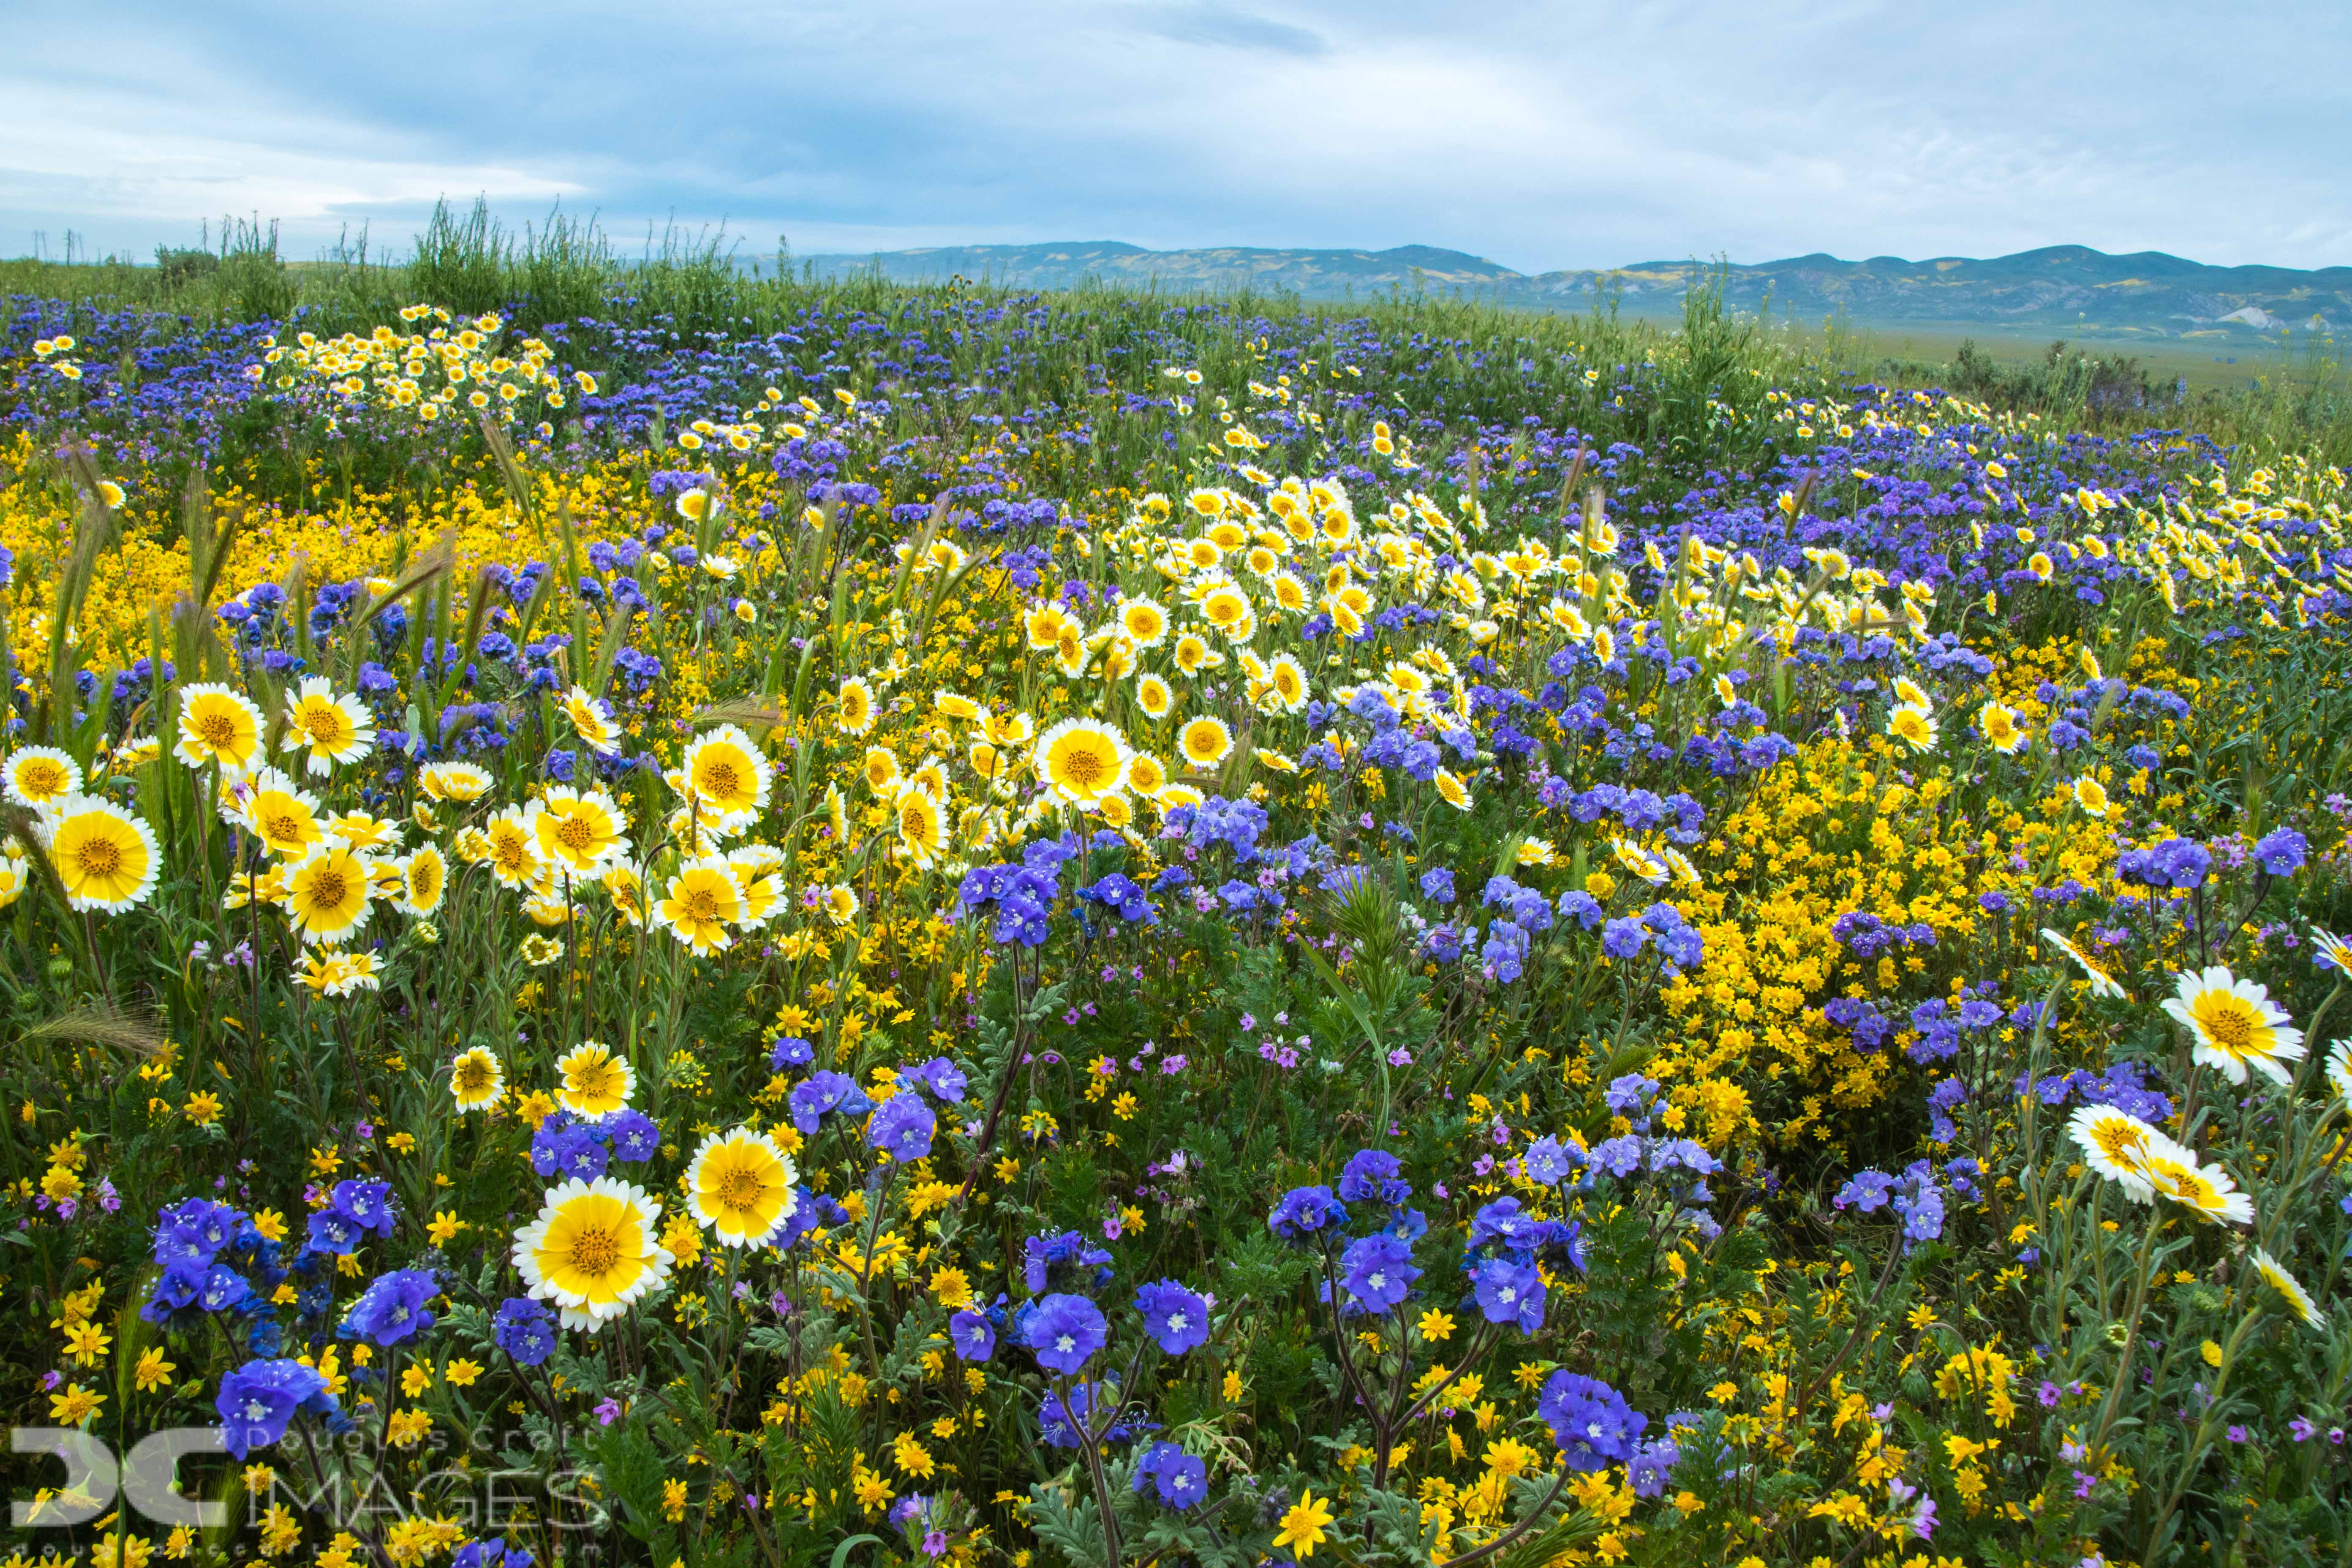 Super Bloom at the Carrizo Plain Shutterbug